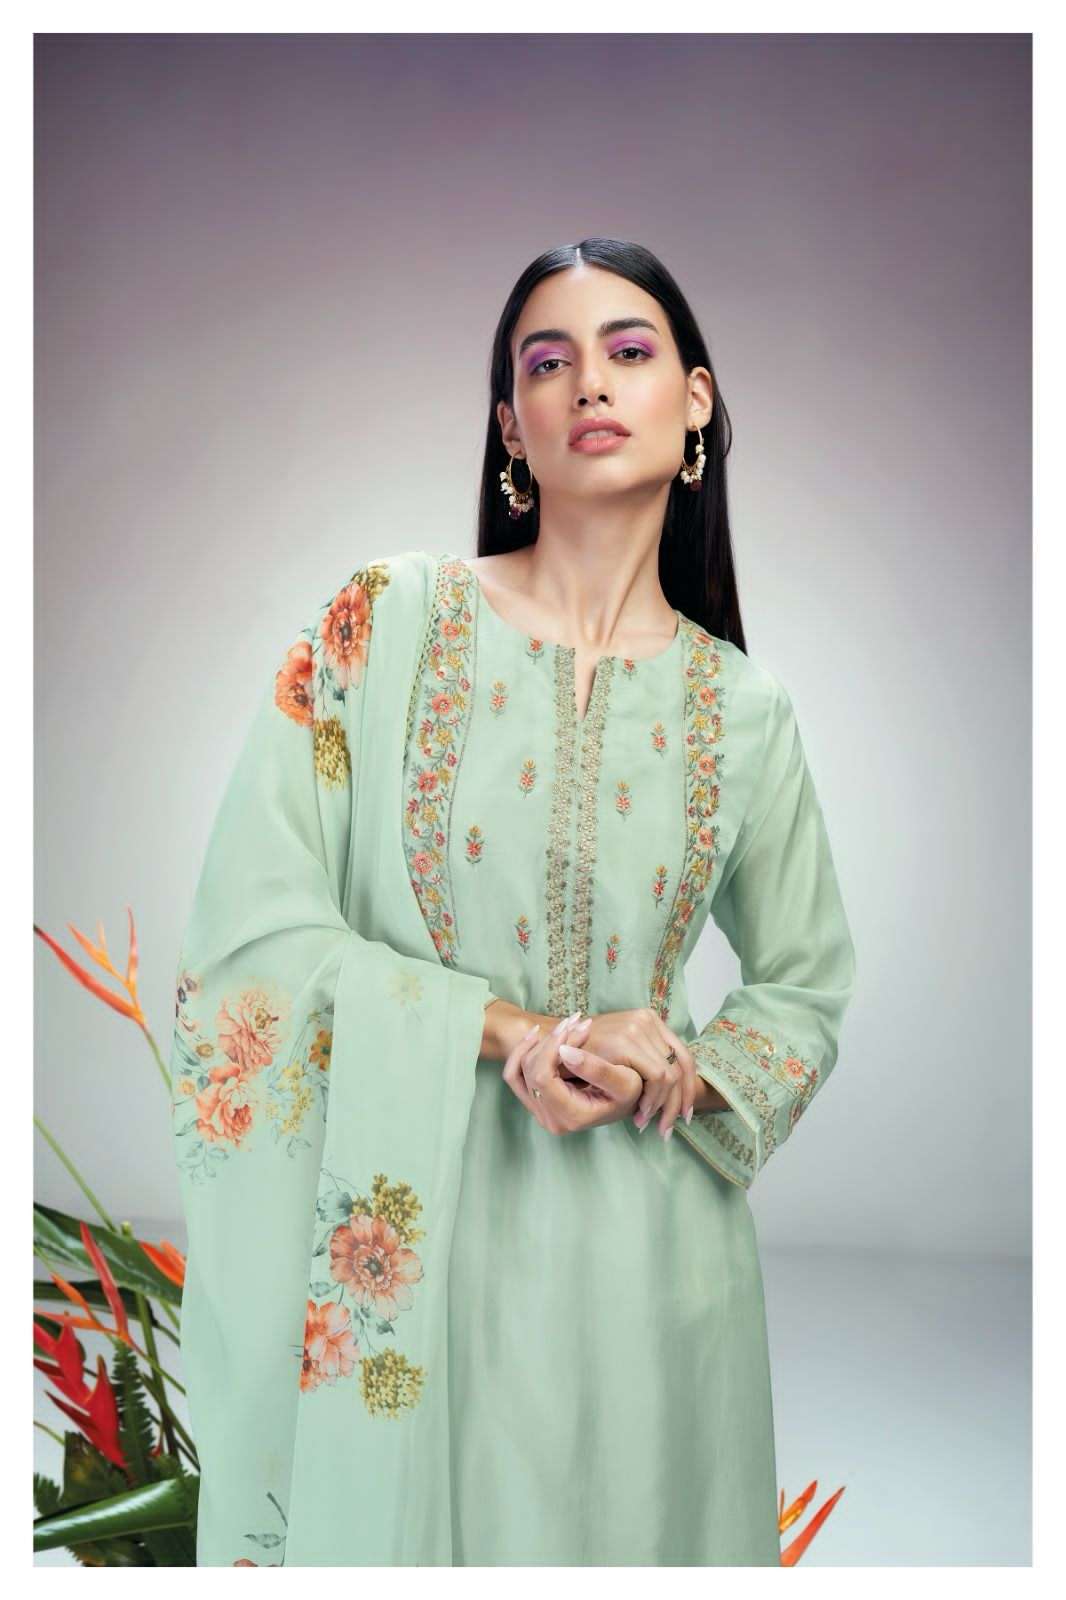 ganga milina 2207 colour series latest designer pakistani salwar kameez wholesaler surat gujarat